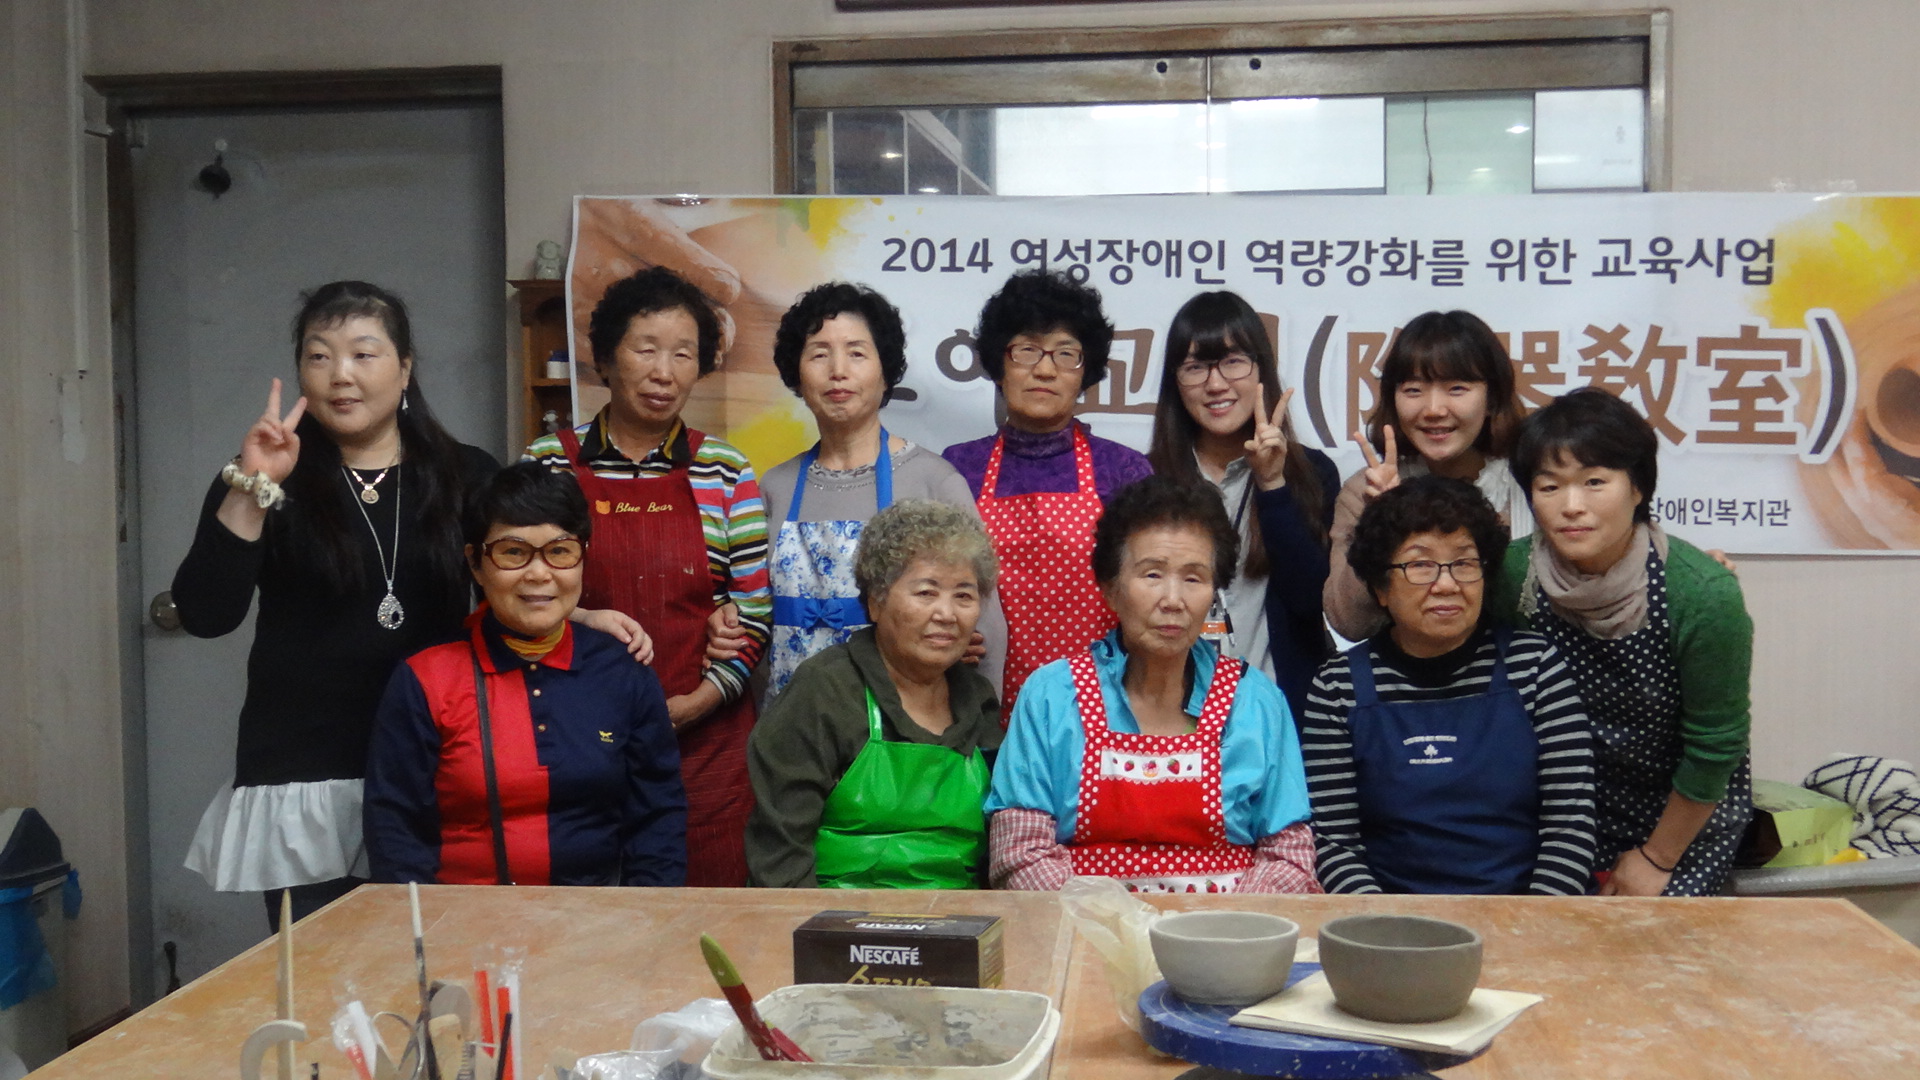 2014 여성장애인교육사업 '도예교실' 수강생 단체 사진